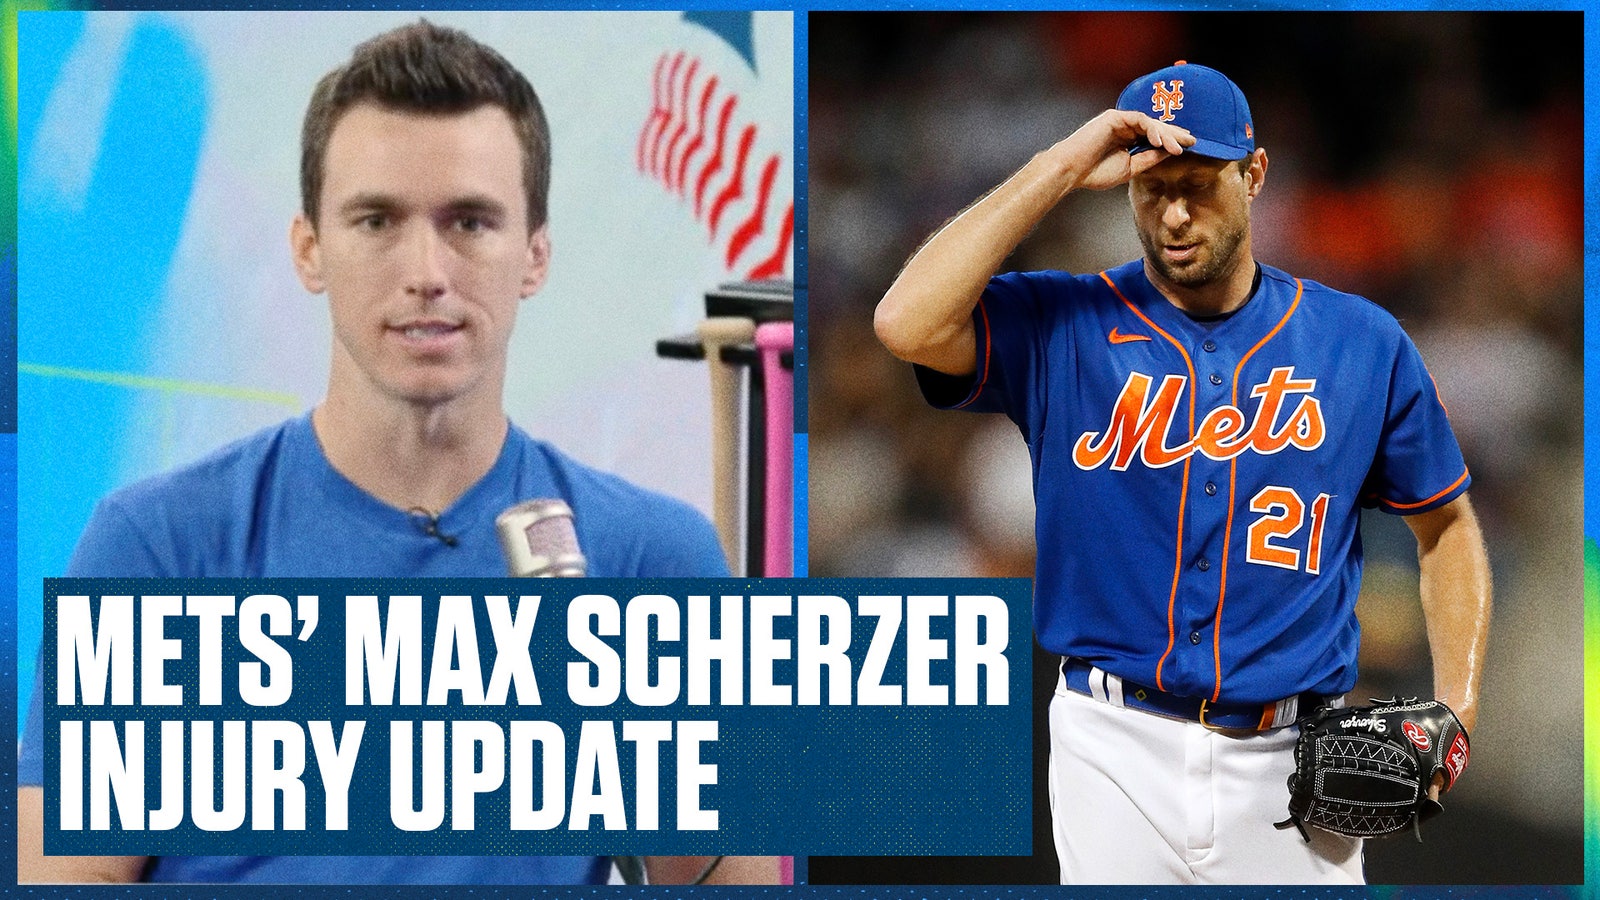 Mets star Max Scherzer is heading to the injured list